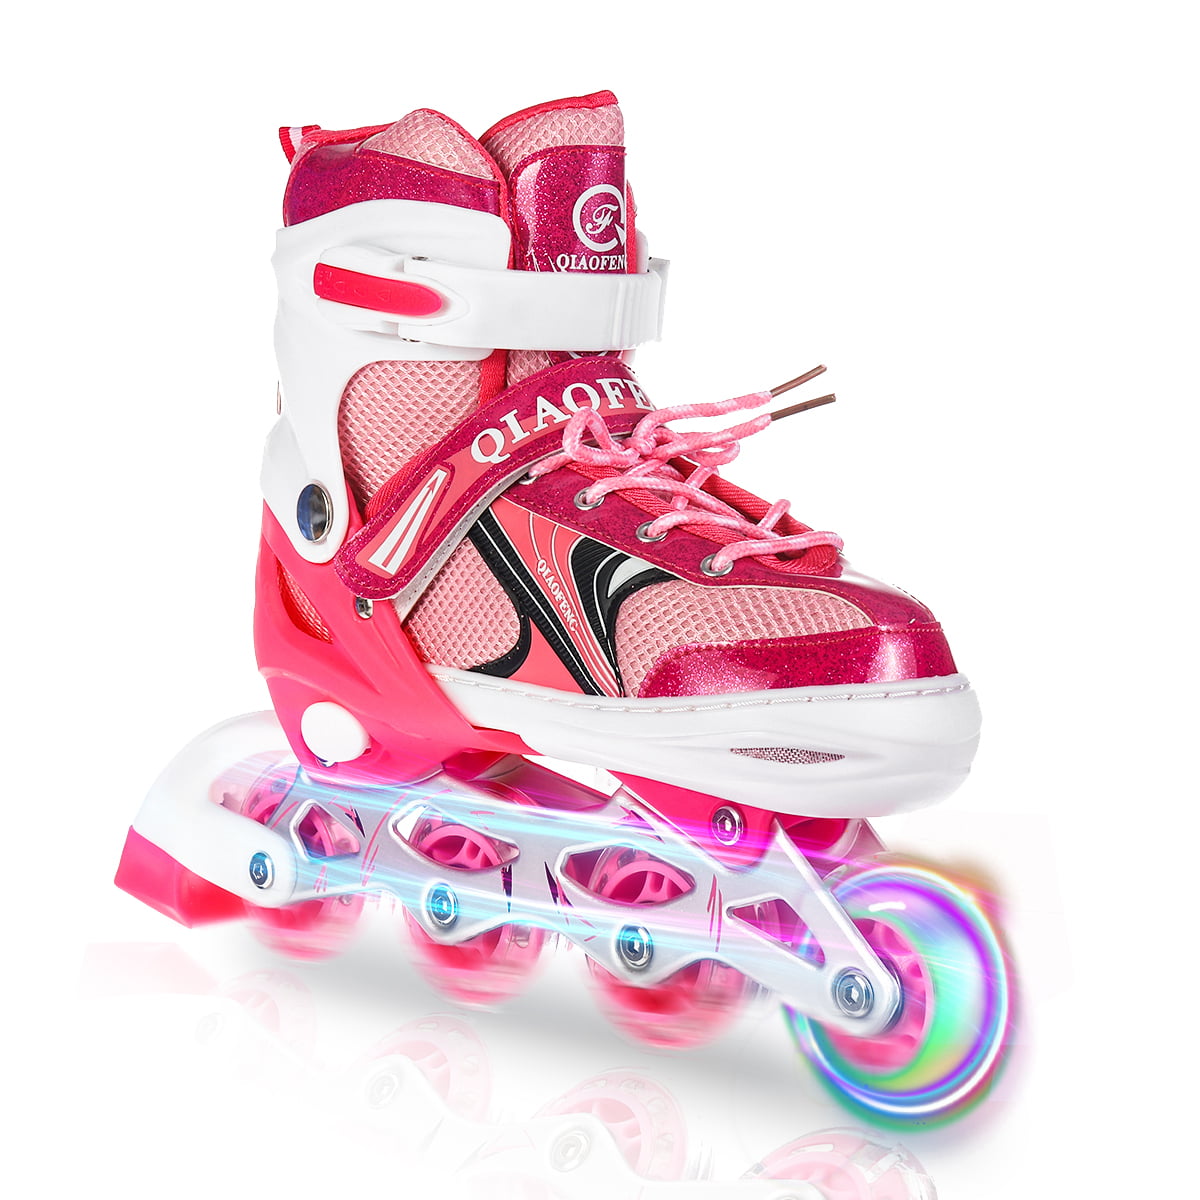 Details about    Inline Skates for Men Women Size 5 6 7 8 9 10 11 Adjustable Roller Blades New 